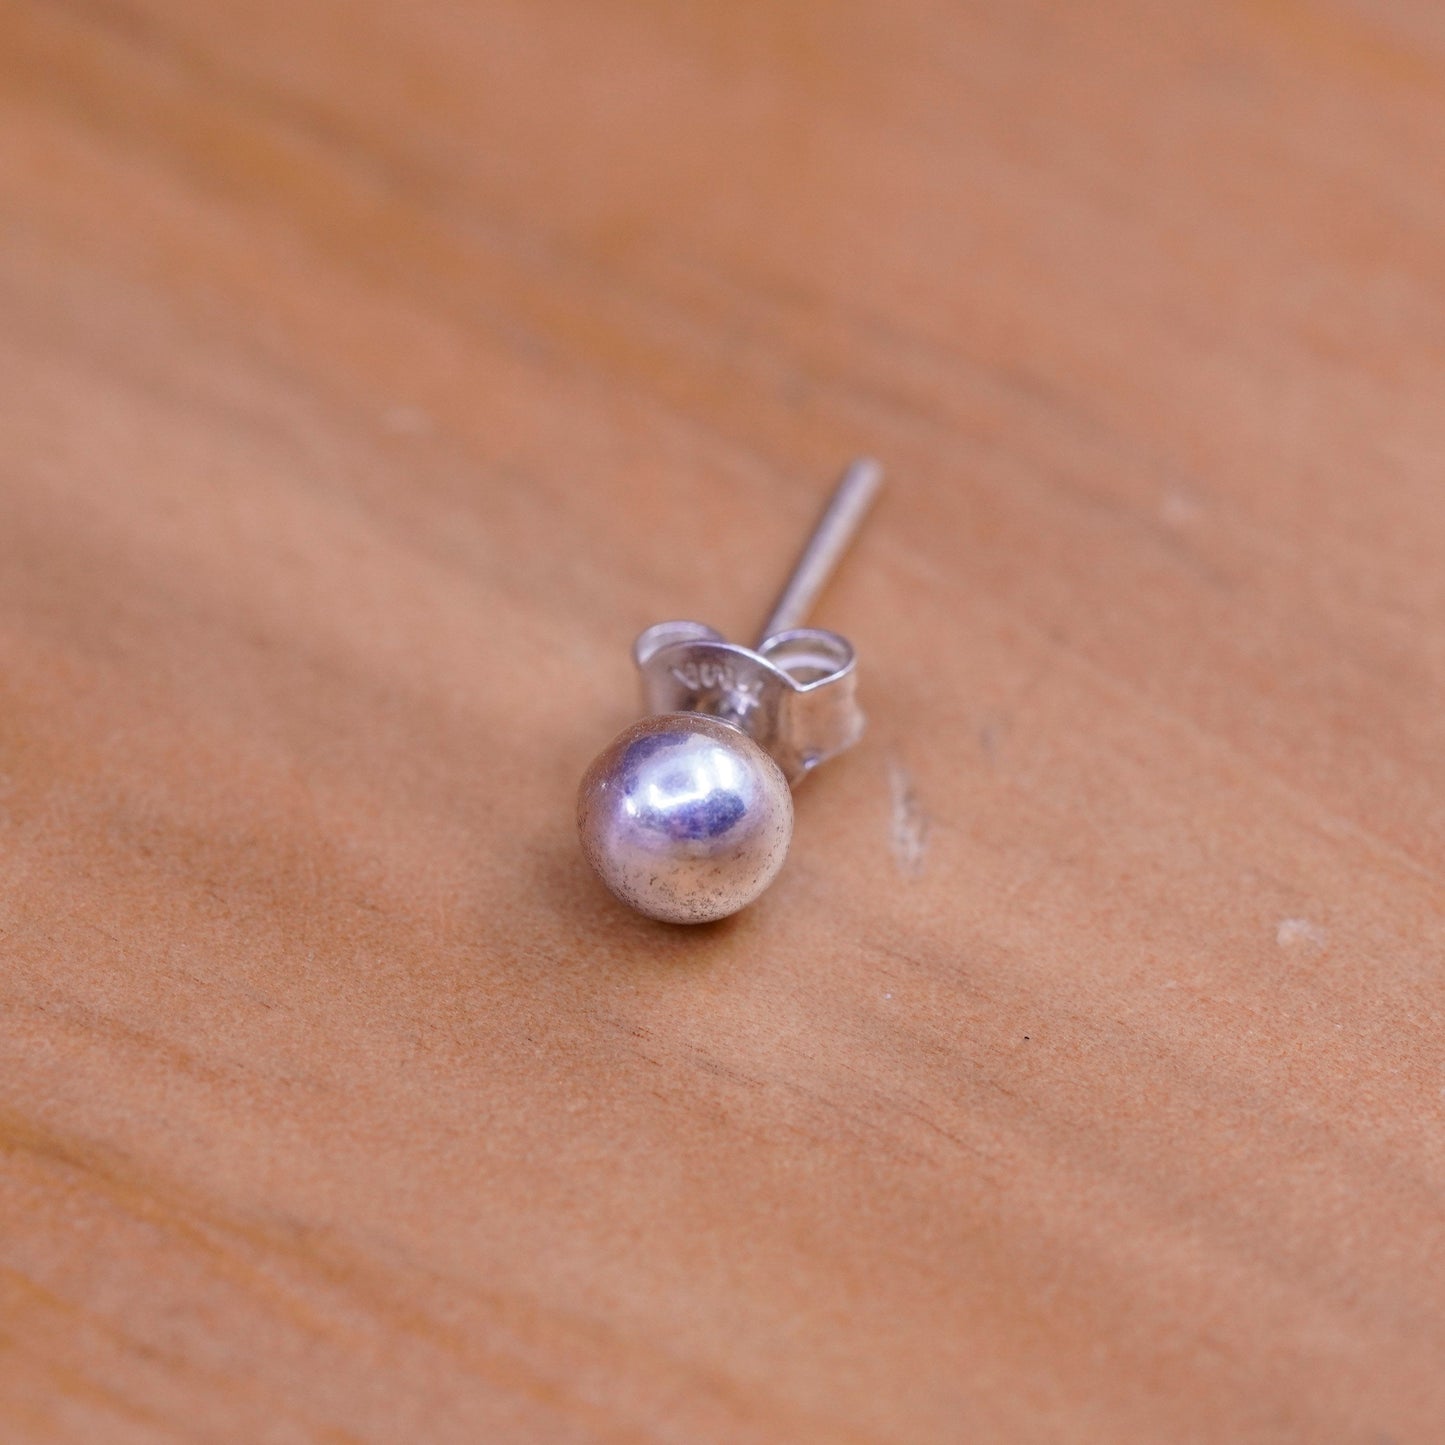 4mm, Vintage Sterling silver huge beads studs, 925 earrings